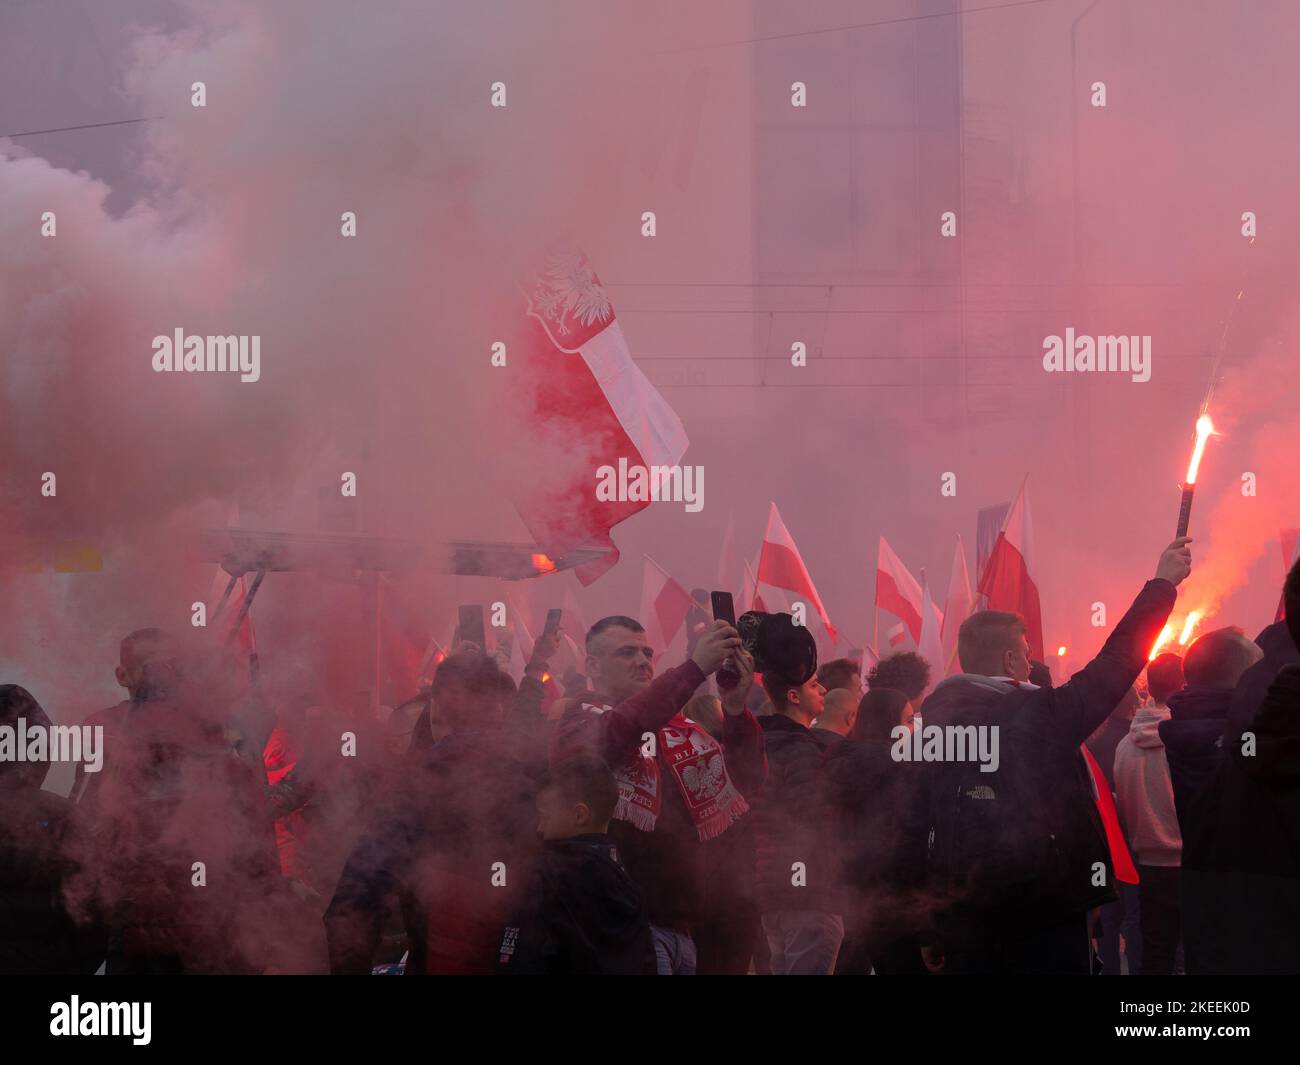 La gente celebra la Giornata dell'Indipendenza Polacca, 11 novembre. Folla con bandiere polacche avvolte nel fumo. Alcuni stanno tenendo i fares. Foto Stock